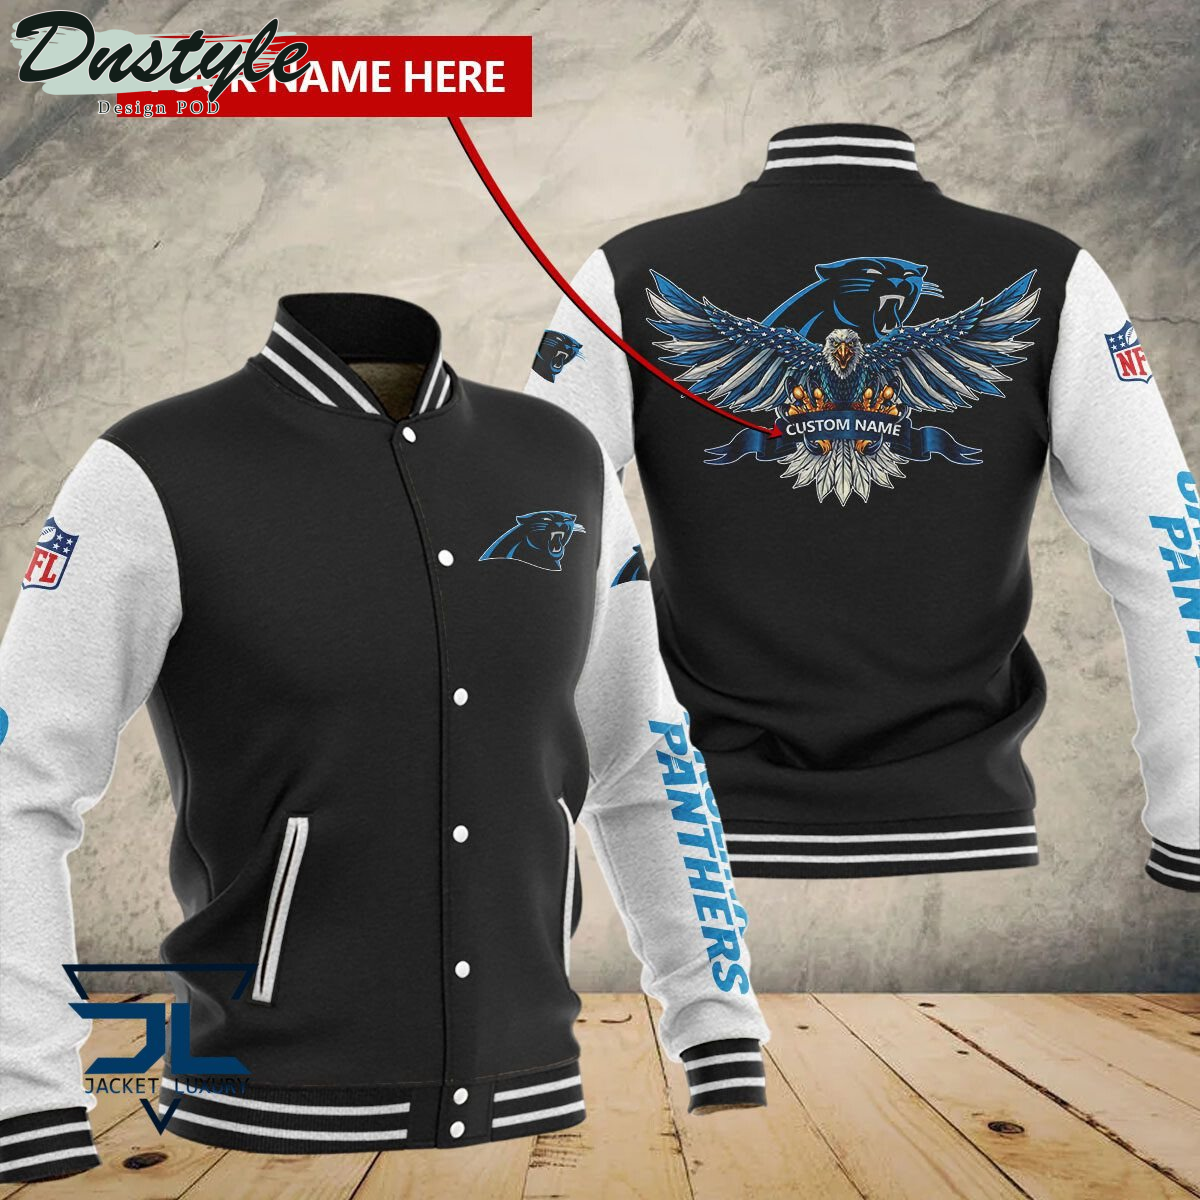 Carolina Panthers Eagles Custom Name Baseball Jacket